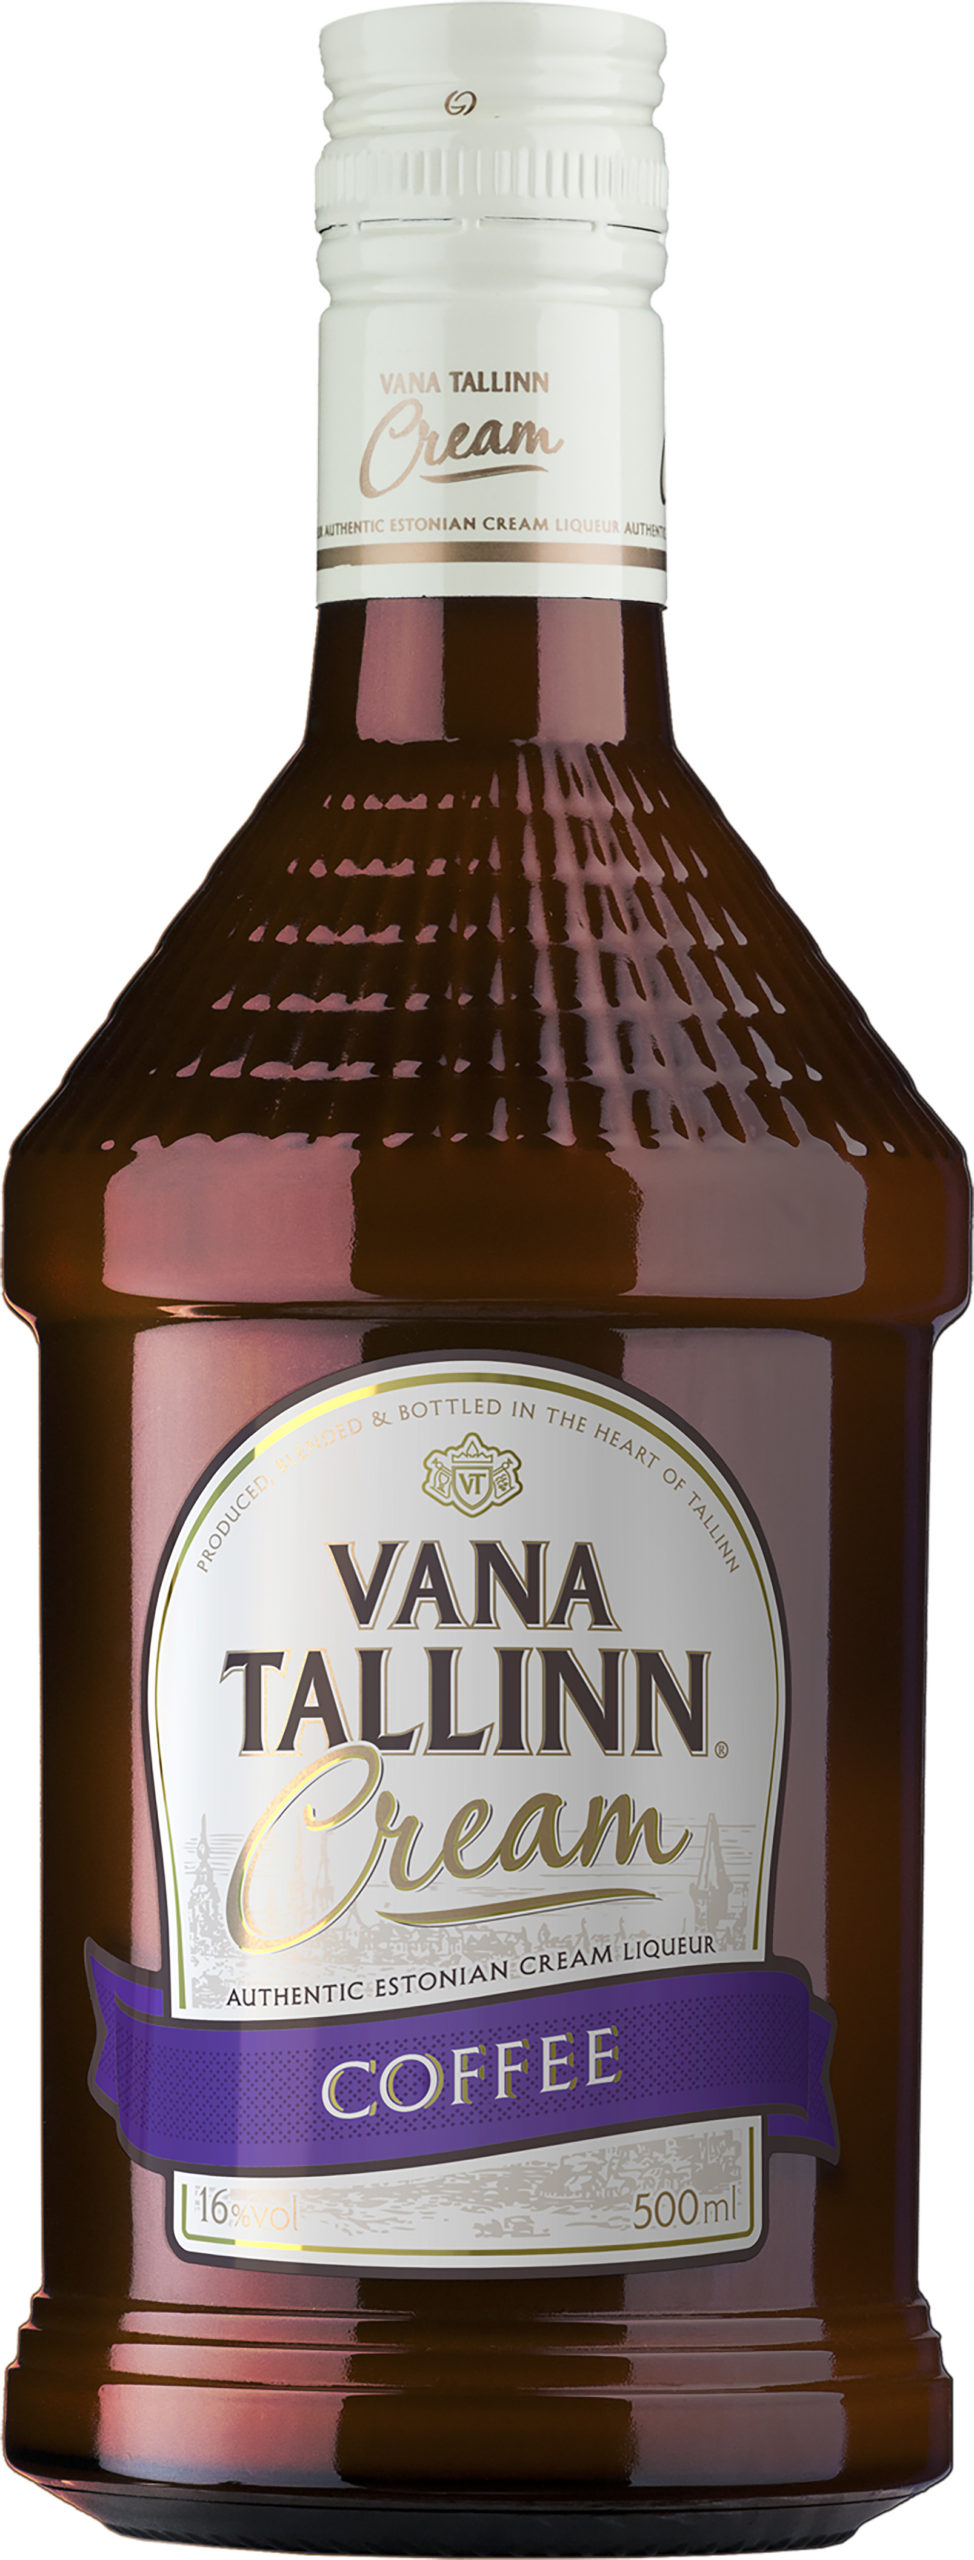 Vana Tallinn Cream Coffee